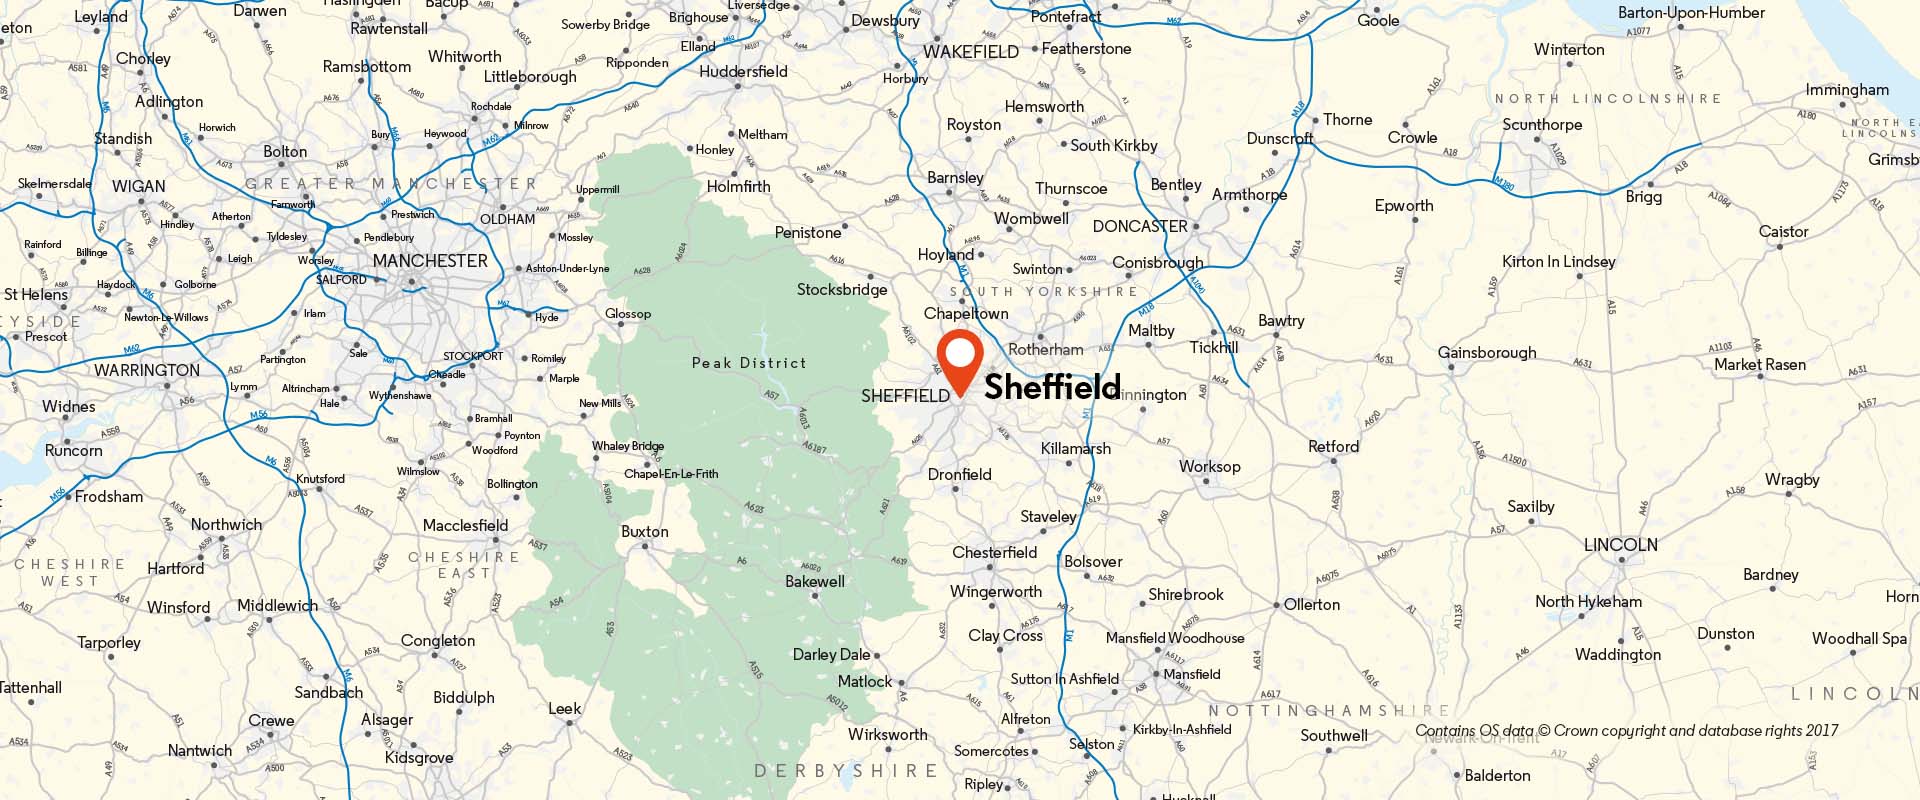 Sheffield CoM location